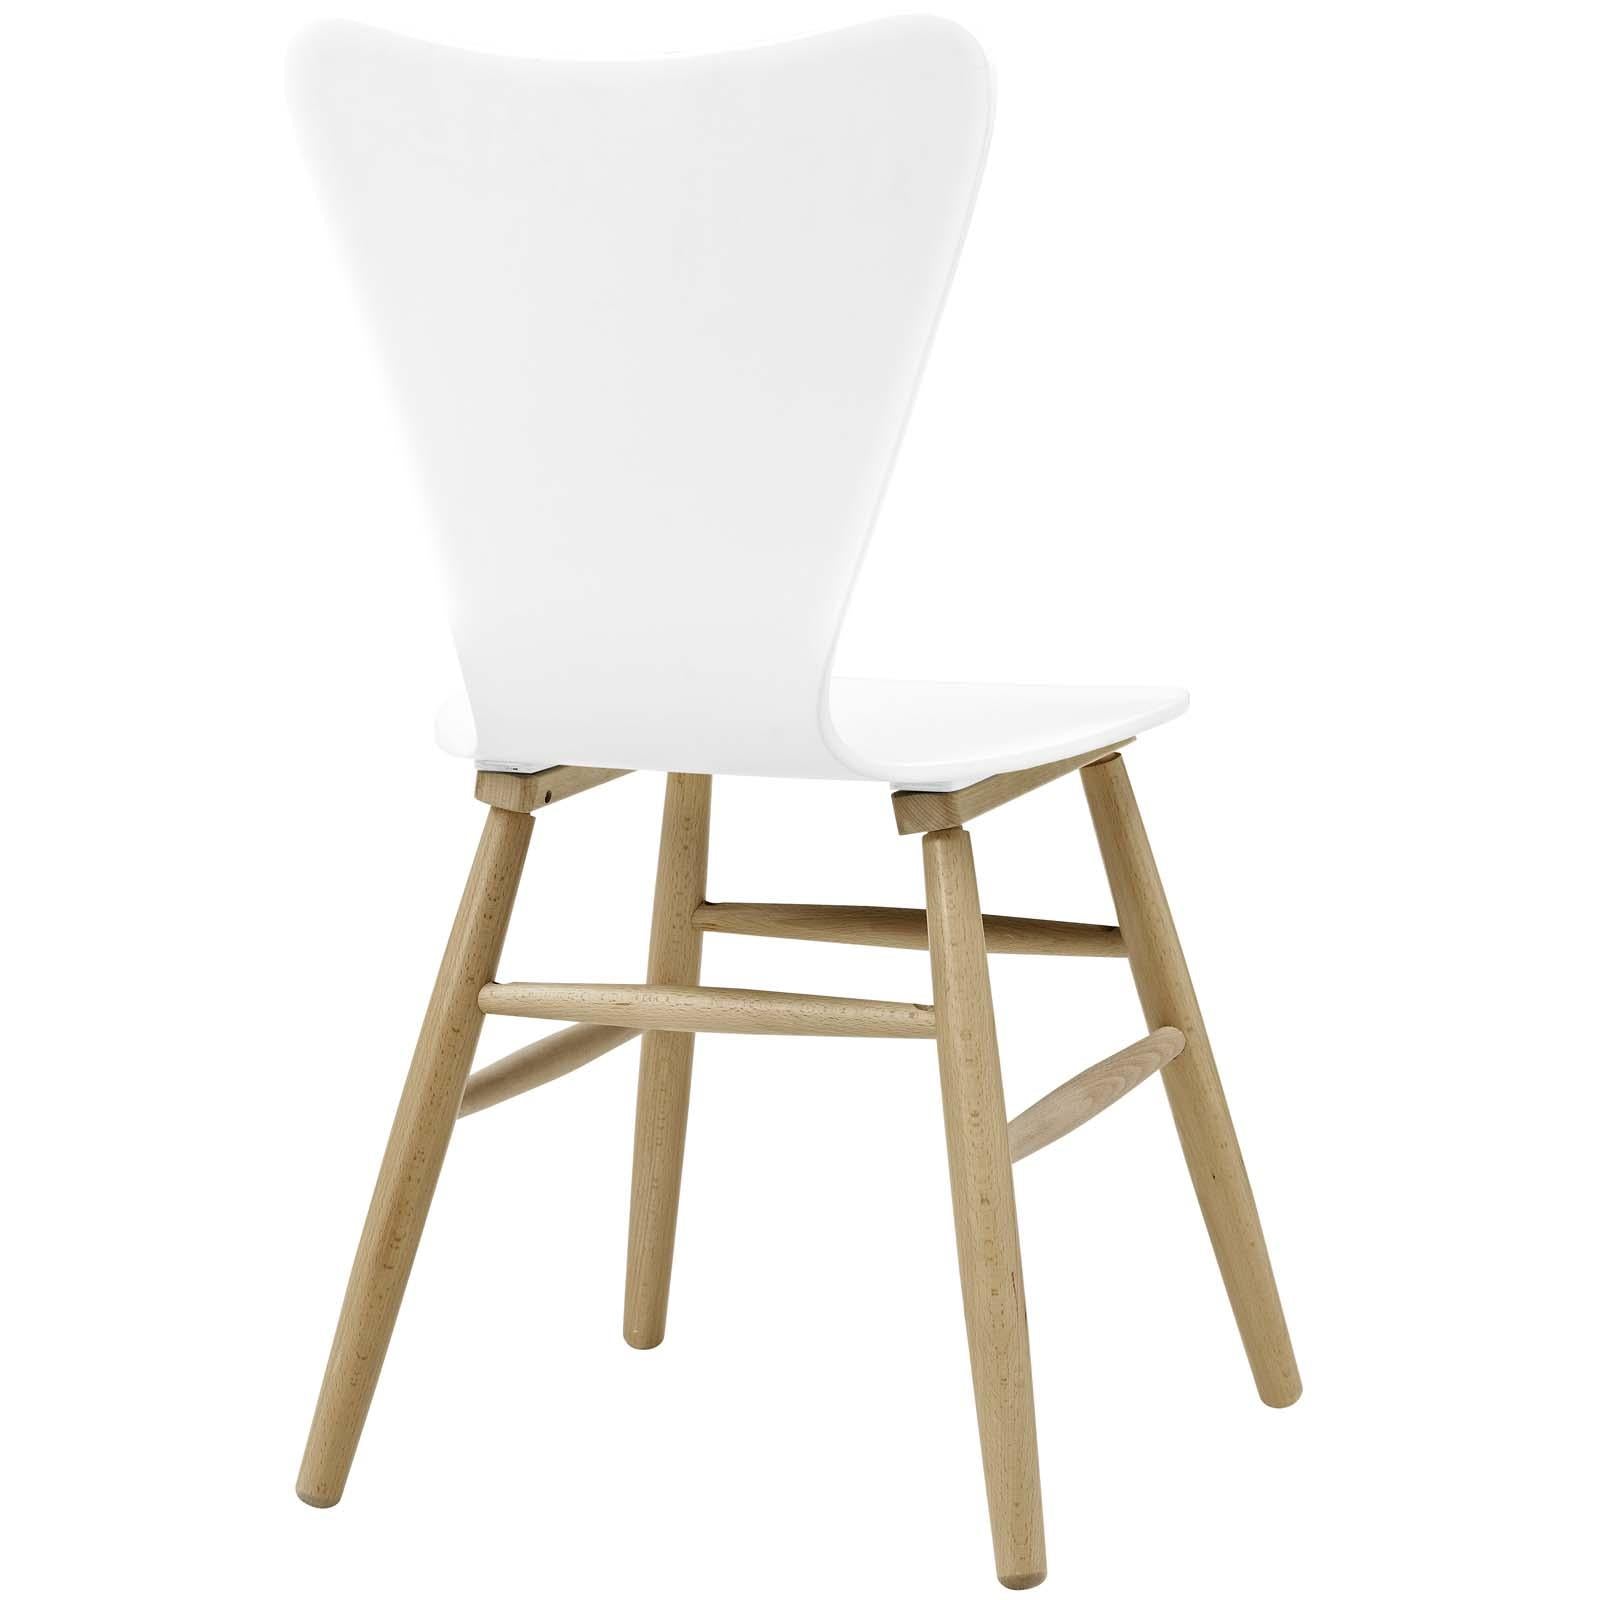 Modway Furniture Modern Cascade Dining Chair Set of 4 - EEI-3380